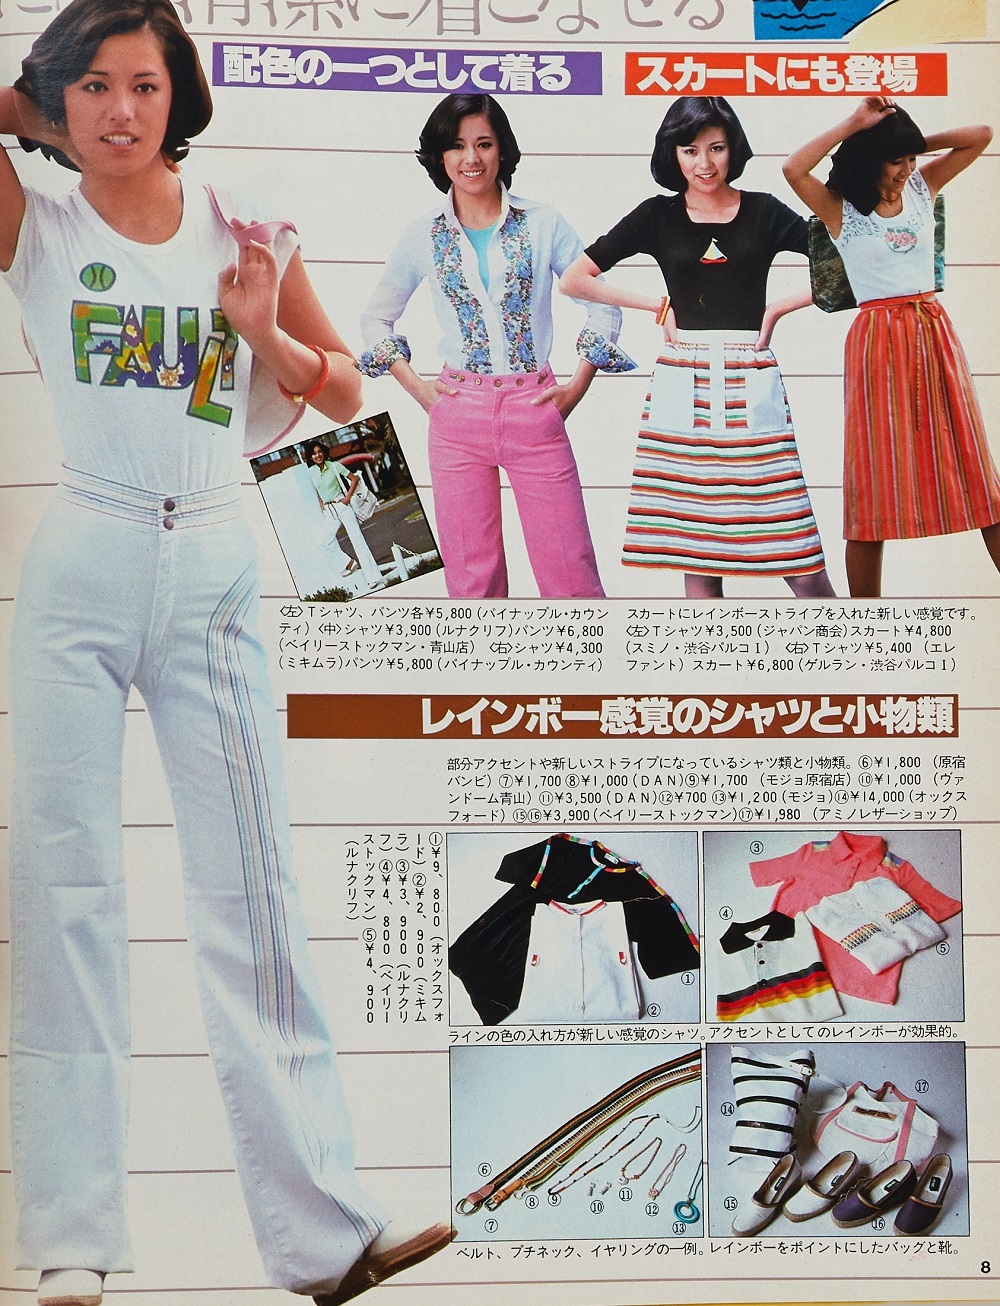 70年代ファッションを振り返り 大流行した サーファー スタイル解説